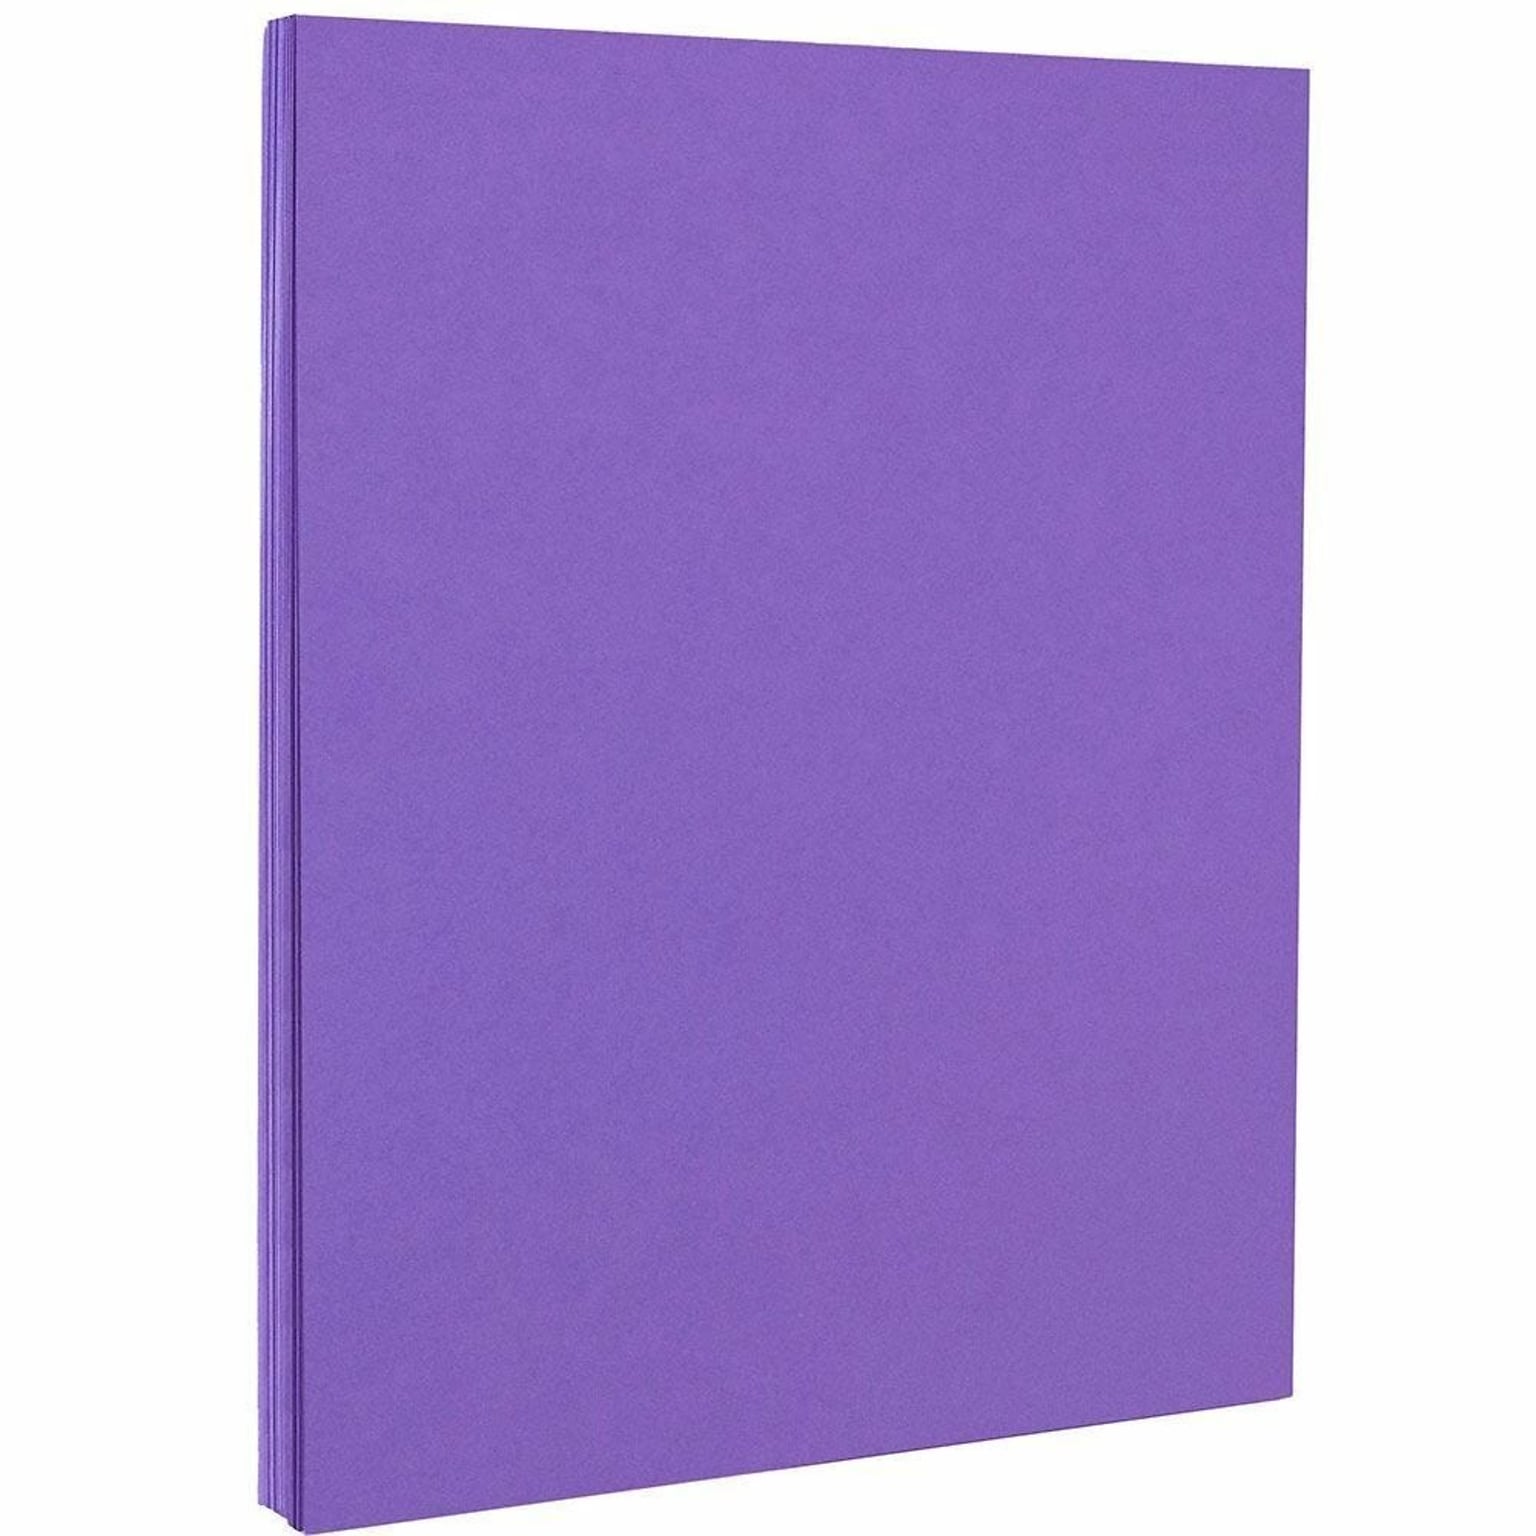 JAM PAPER 8.5 x 11 Color Cardstock, 65lb, Violet, 100 Sheets/Pack (102426G)